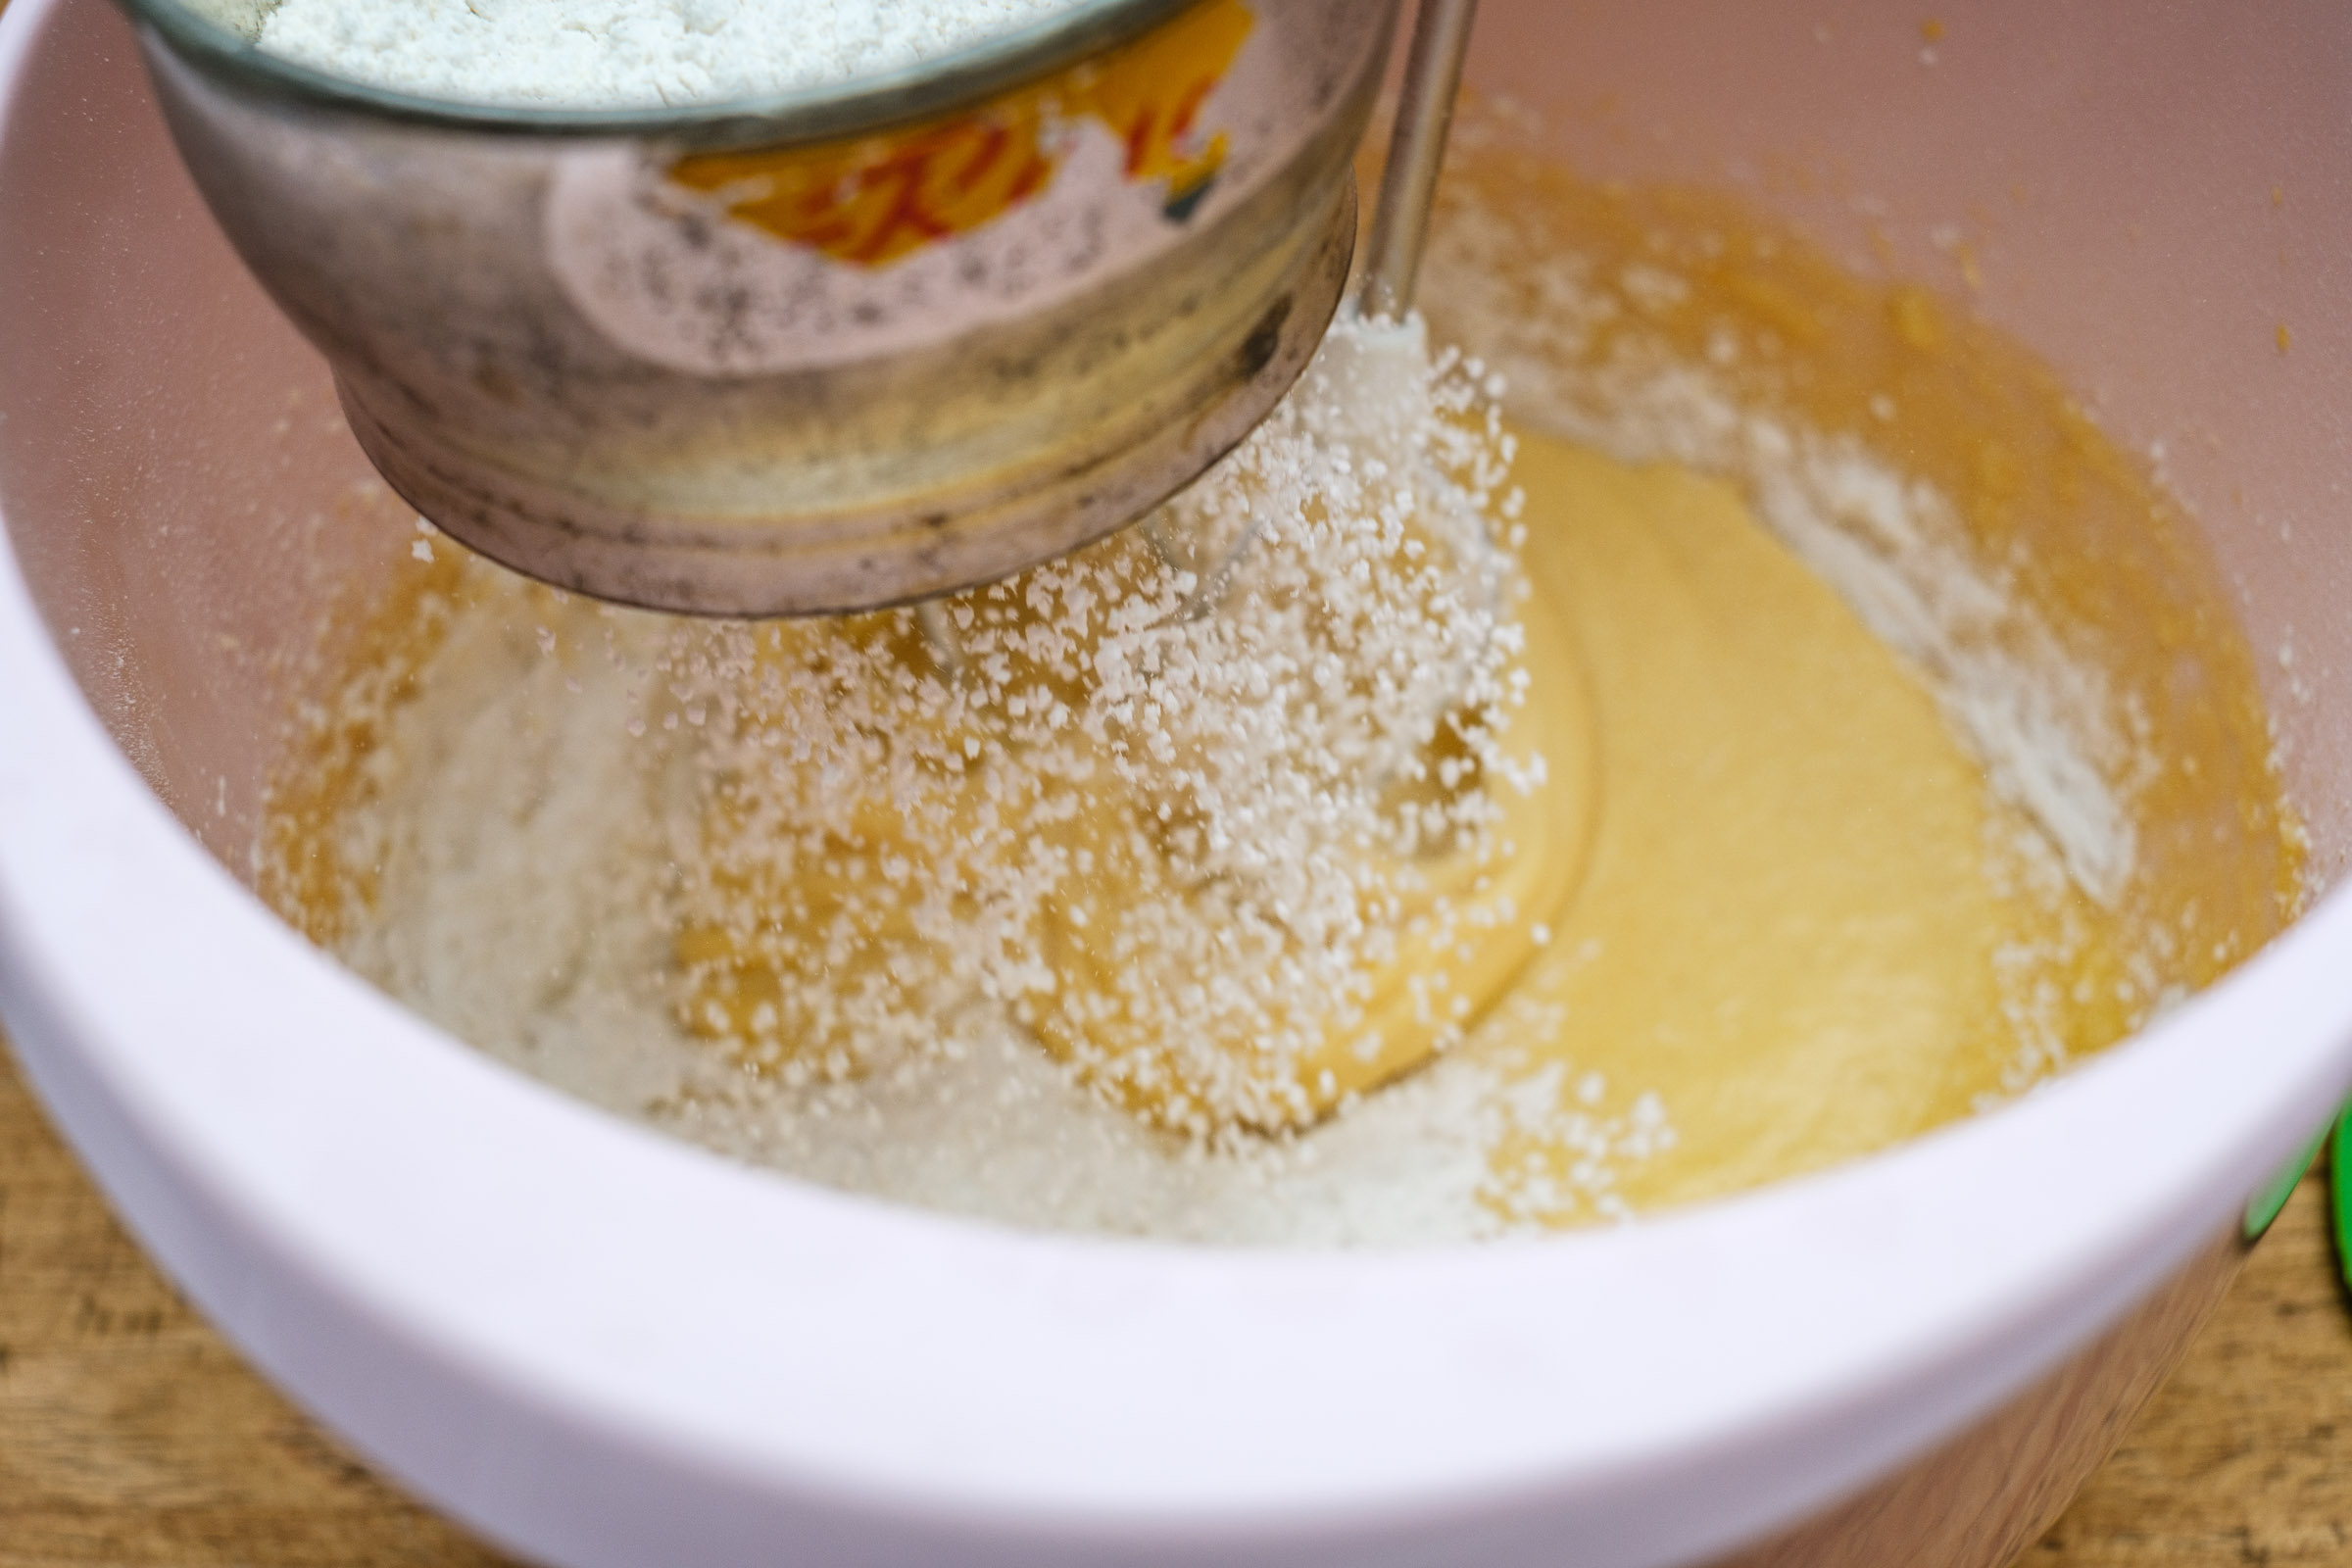 Detail sift flour into the dough